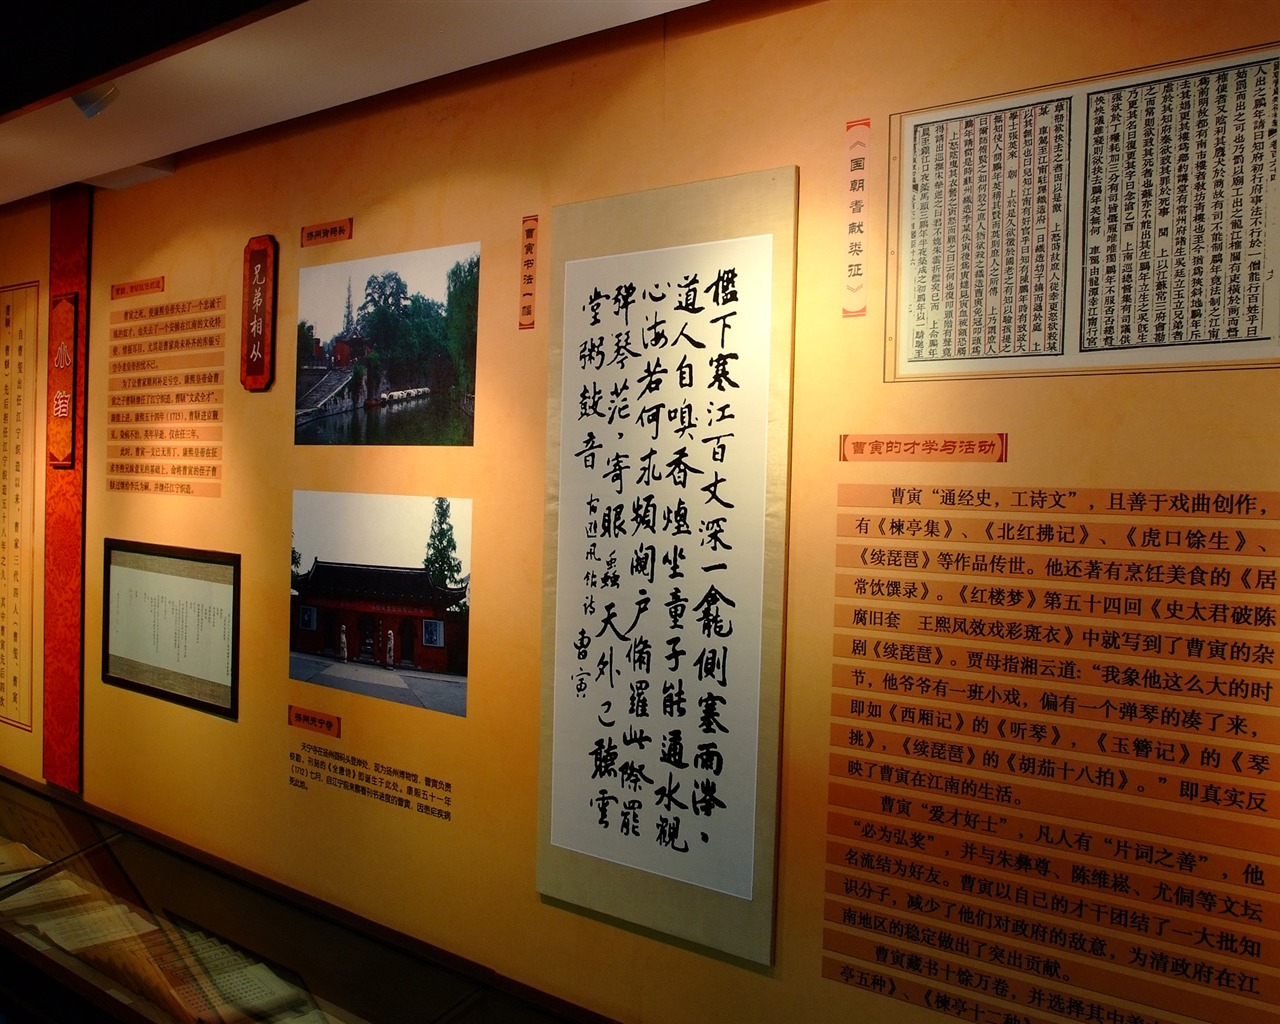 初夏的香山植物园 (螺纹钢作品)21 - 1280x1024